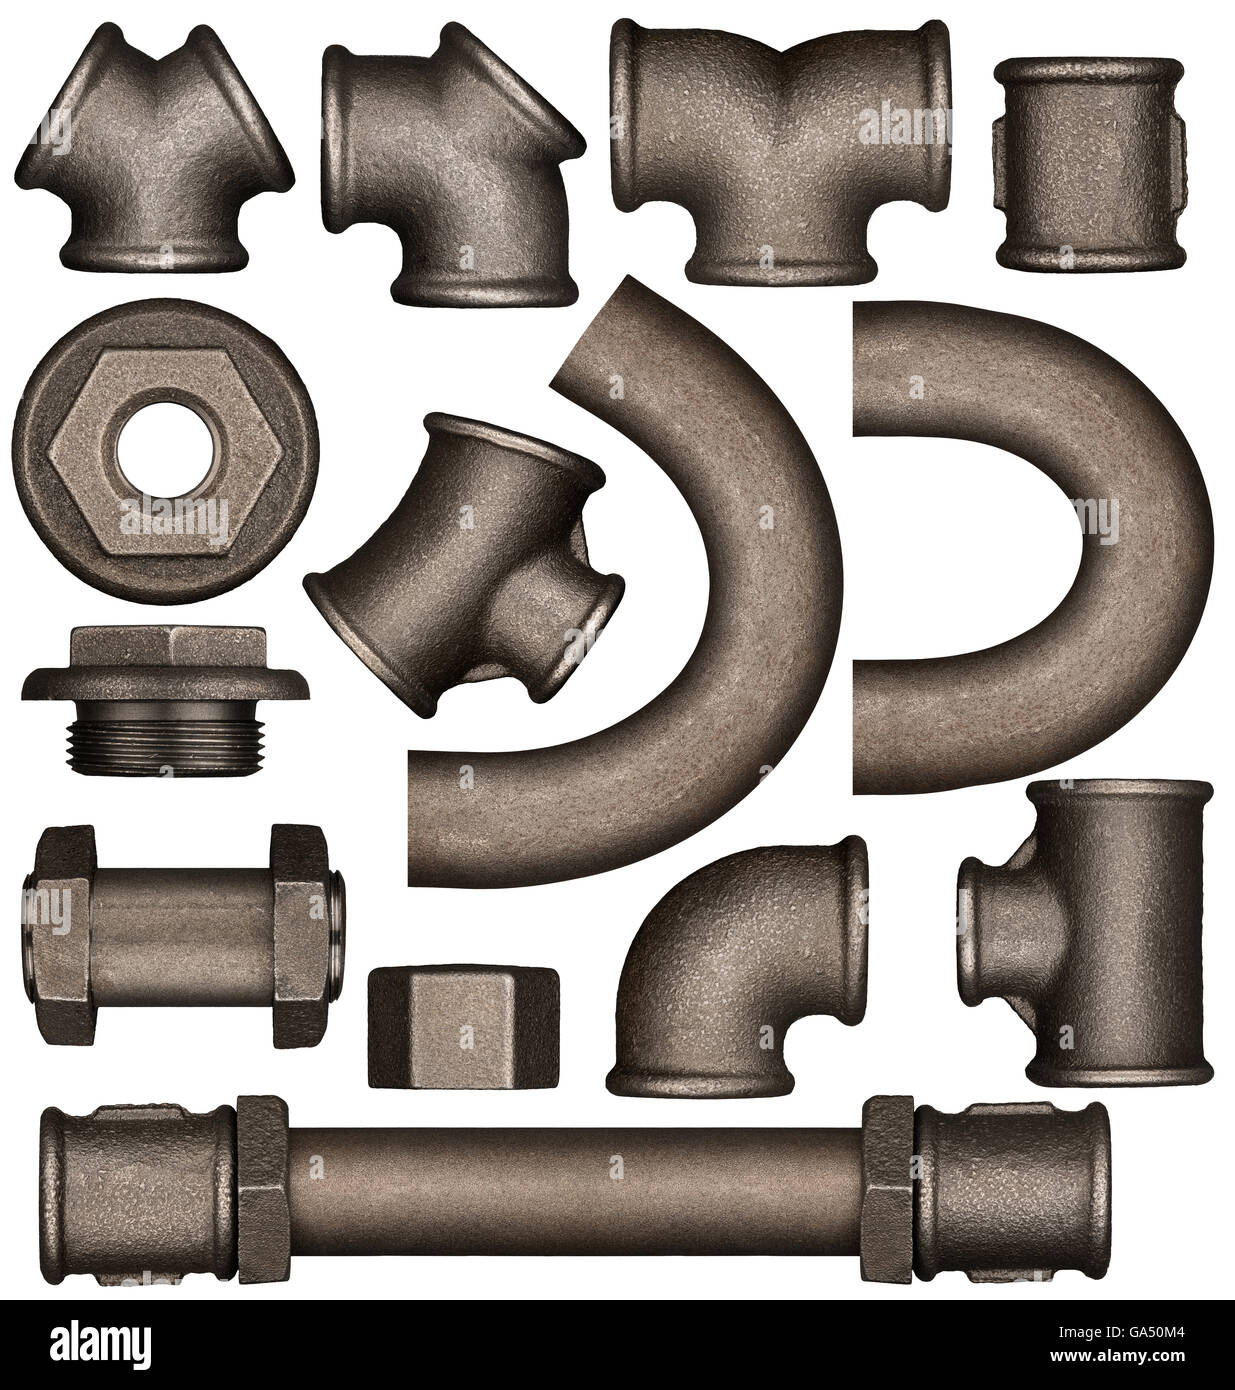 Tubos y tuberías de metal diversas articulaciones set adaptado para el boceto del diseño. Foto de stock